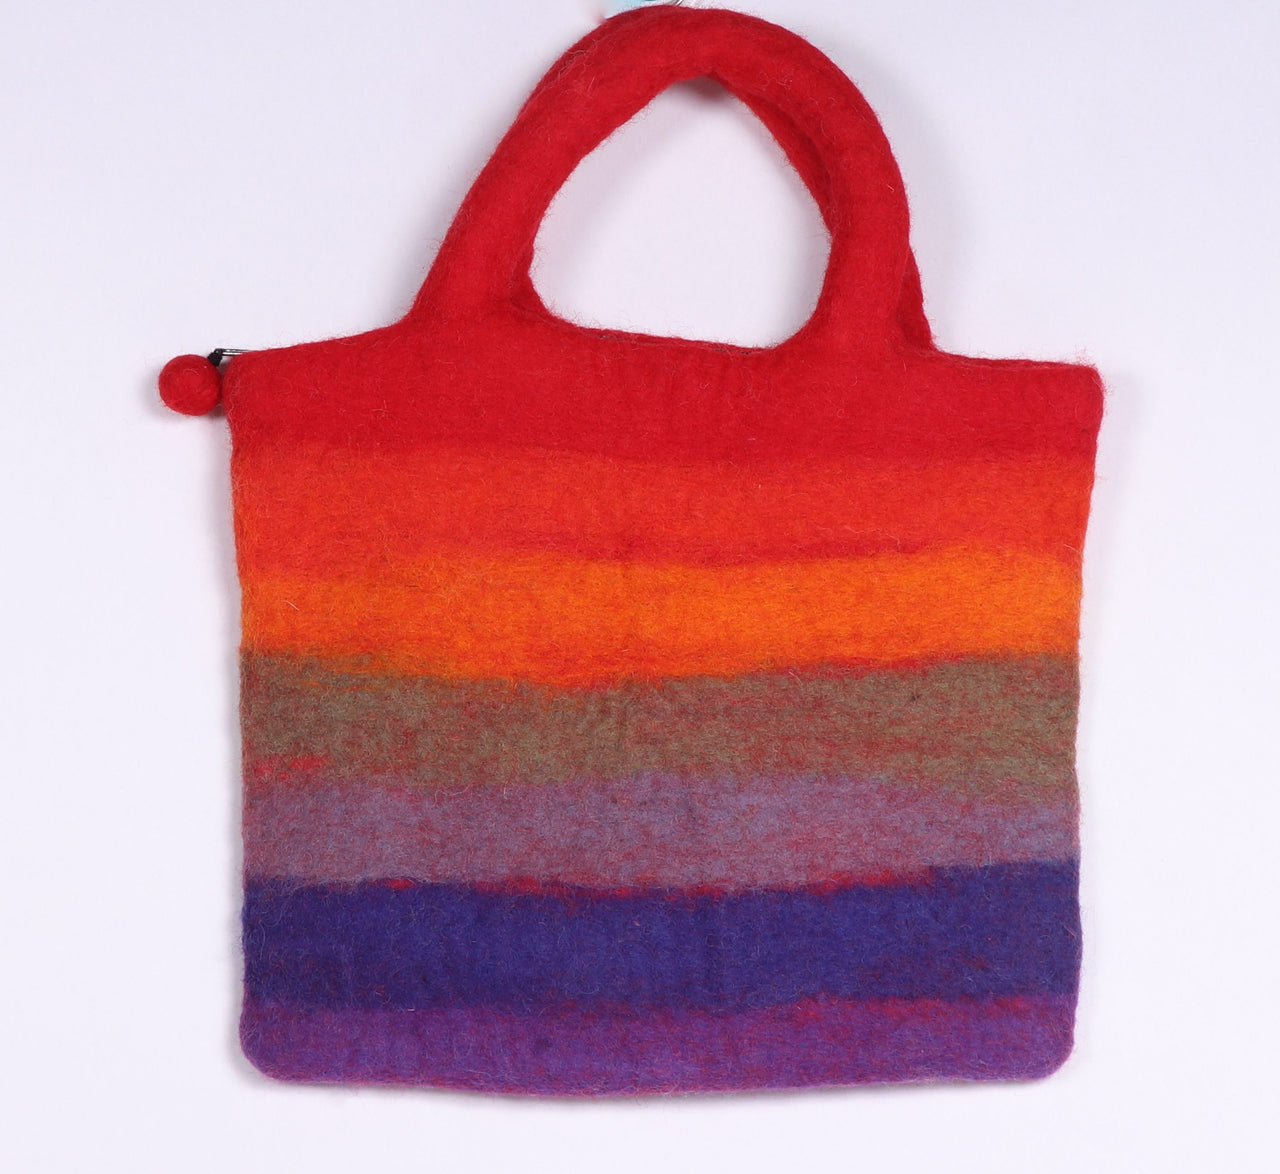 Colourful felt bag